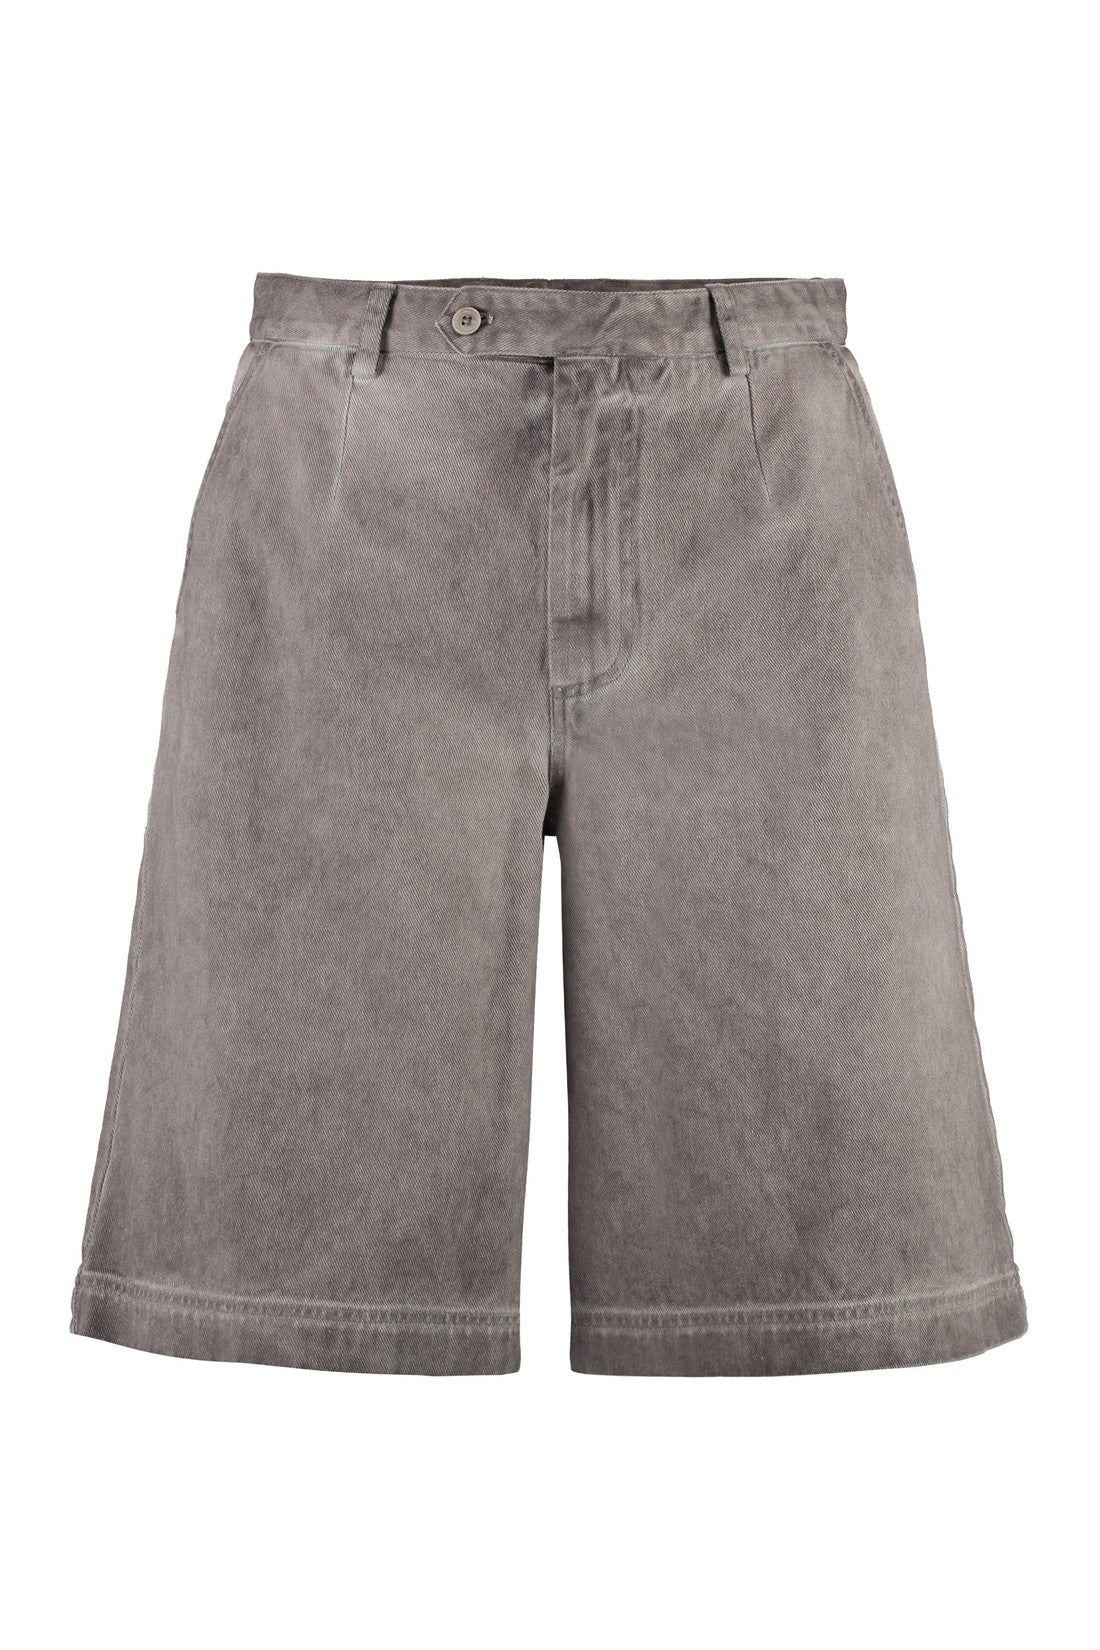 Dolce & Gabbana-OUTLET-SALE-Cotton bermuda shorts-ARCHIVIST